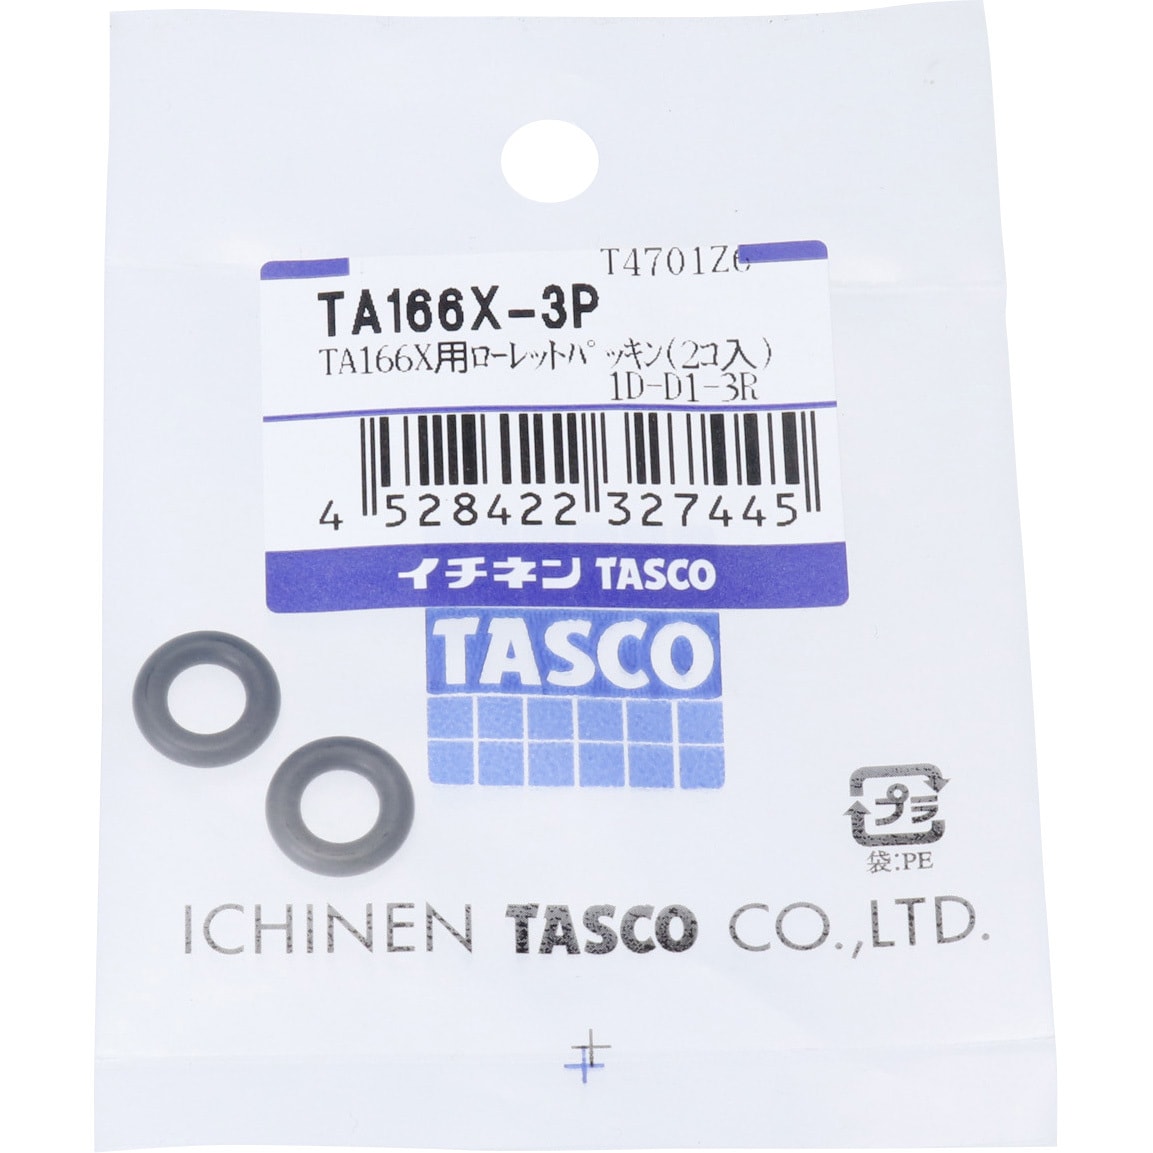 日本全国送料無料 イチネンTASCO タスコ :TA166-3用ローレットパッキン 2コ入 TA166-3P